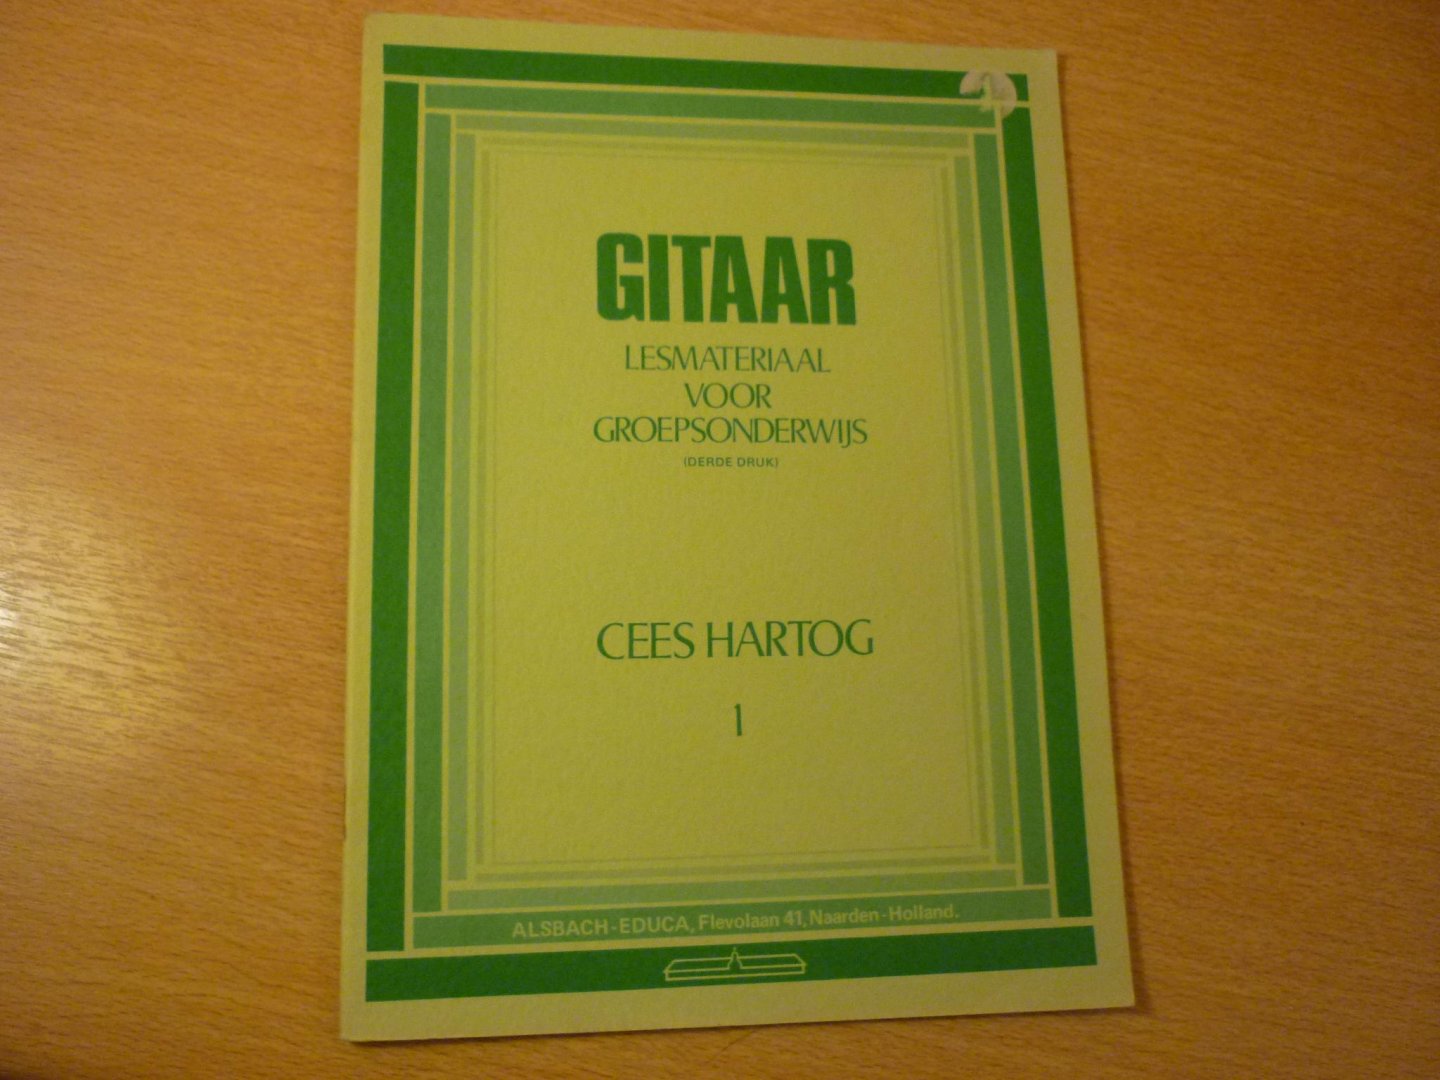 Hartog Cees - Gitaar; Lesmateriaal voor groepsonderwijs - Boek I; (3e druk)